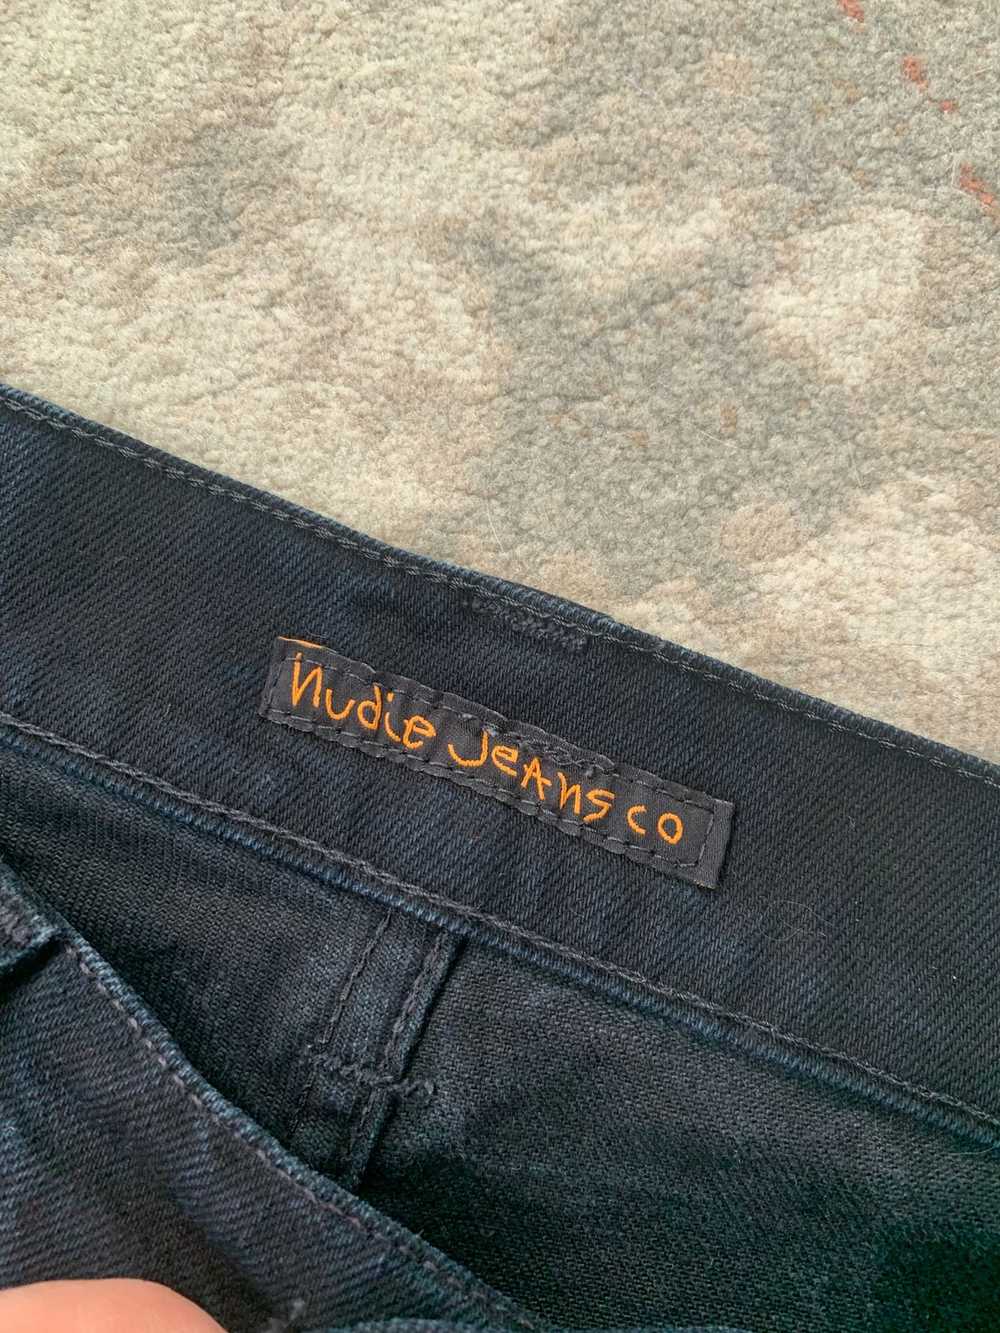 Japanese Brand × Nudie Jeans Nudie Jeans Co Denim… - image 4